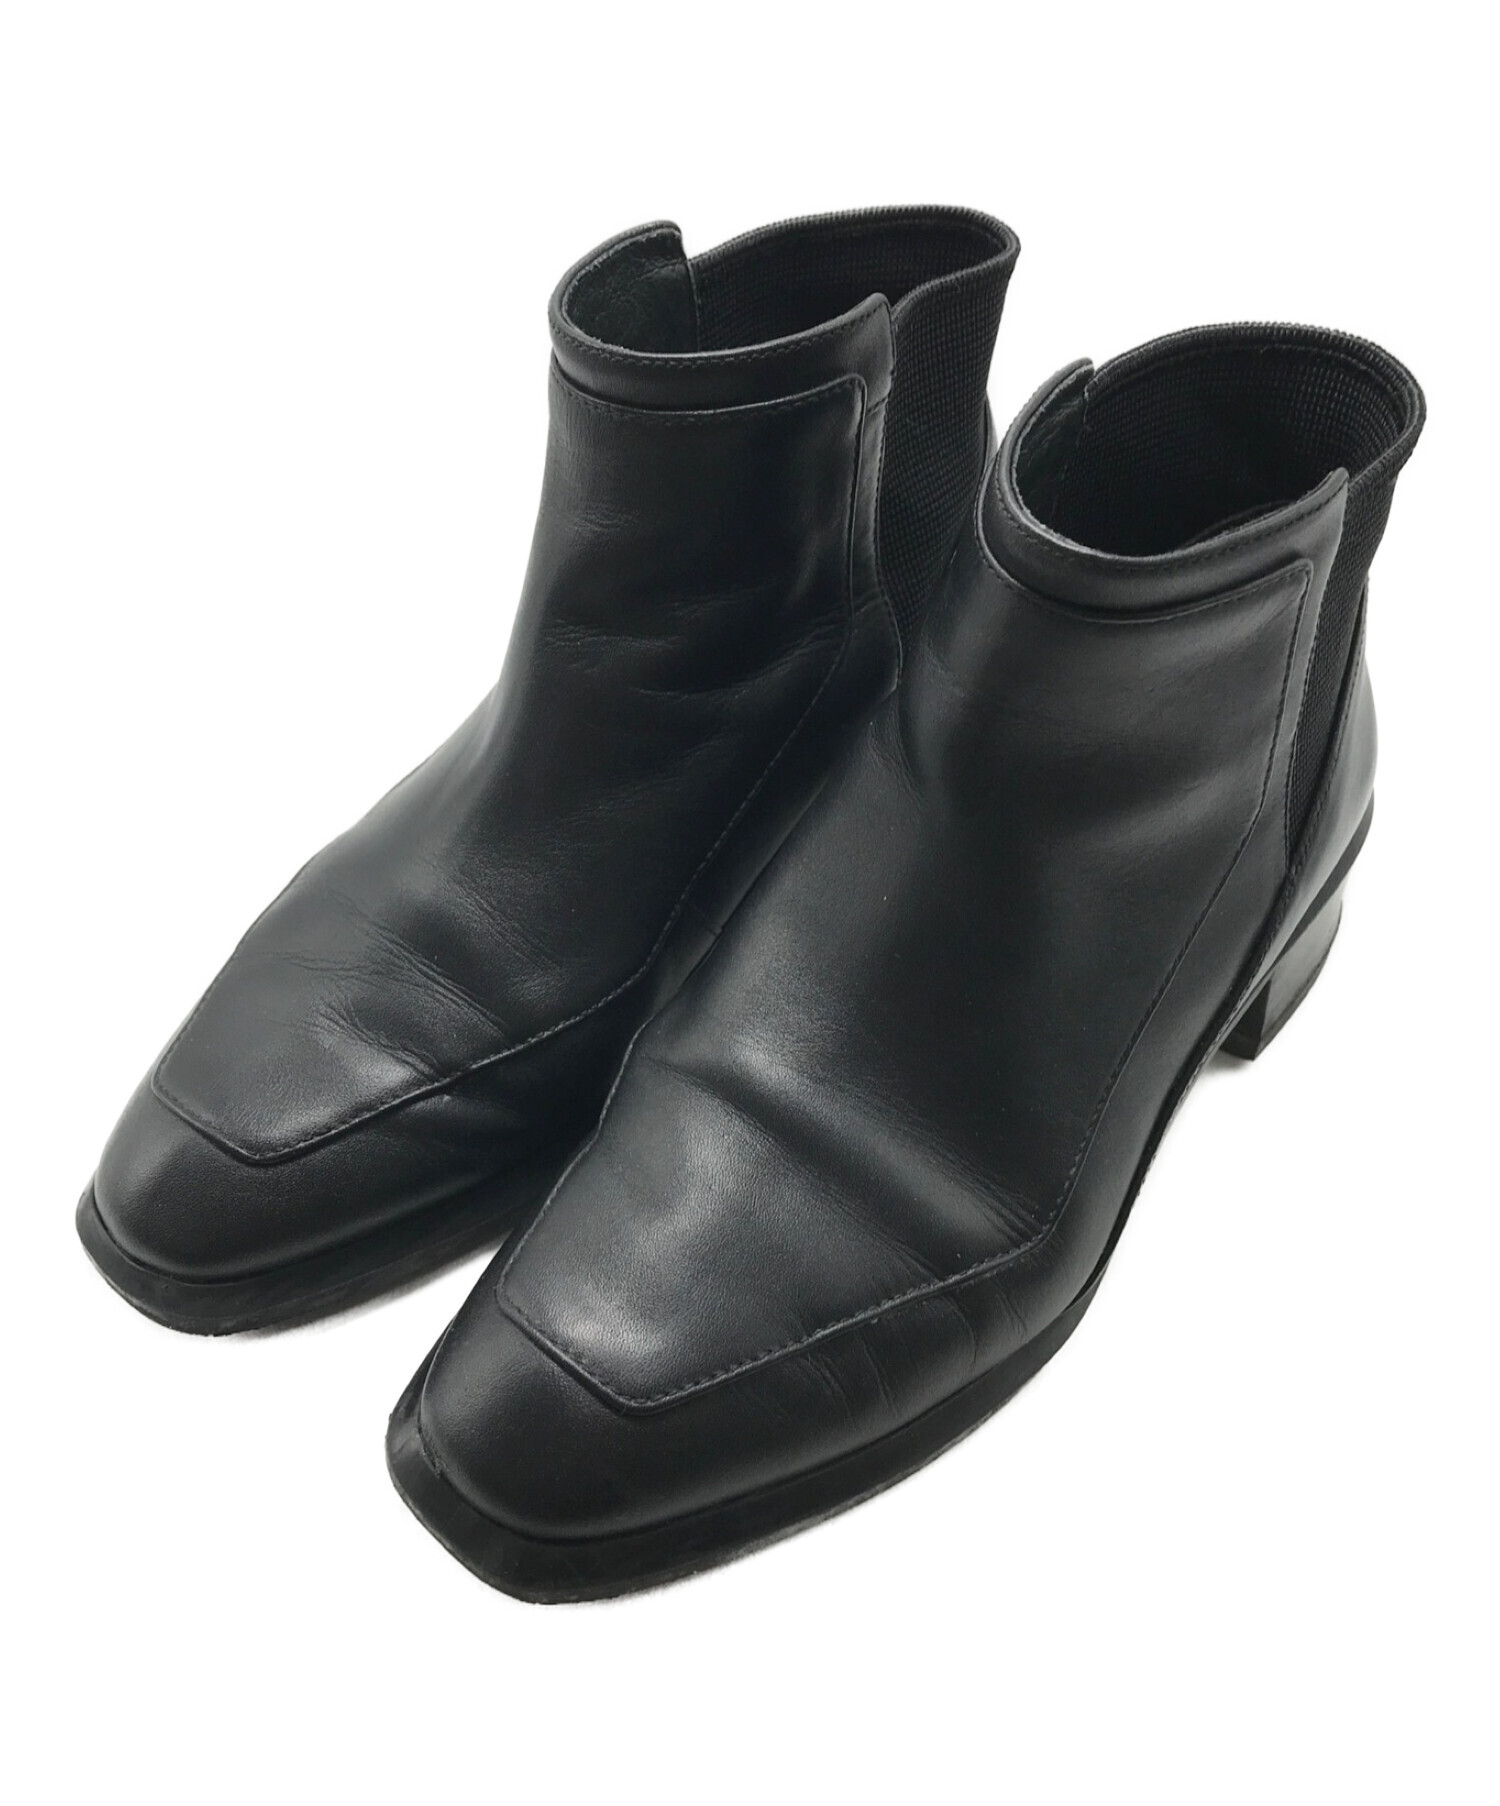 UNITED NUDE (ユナイテッドヌード) ショートブーツ ブラック サイズ:23.5㎝